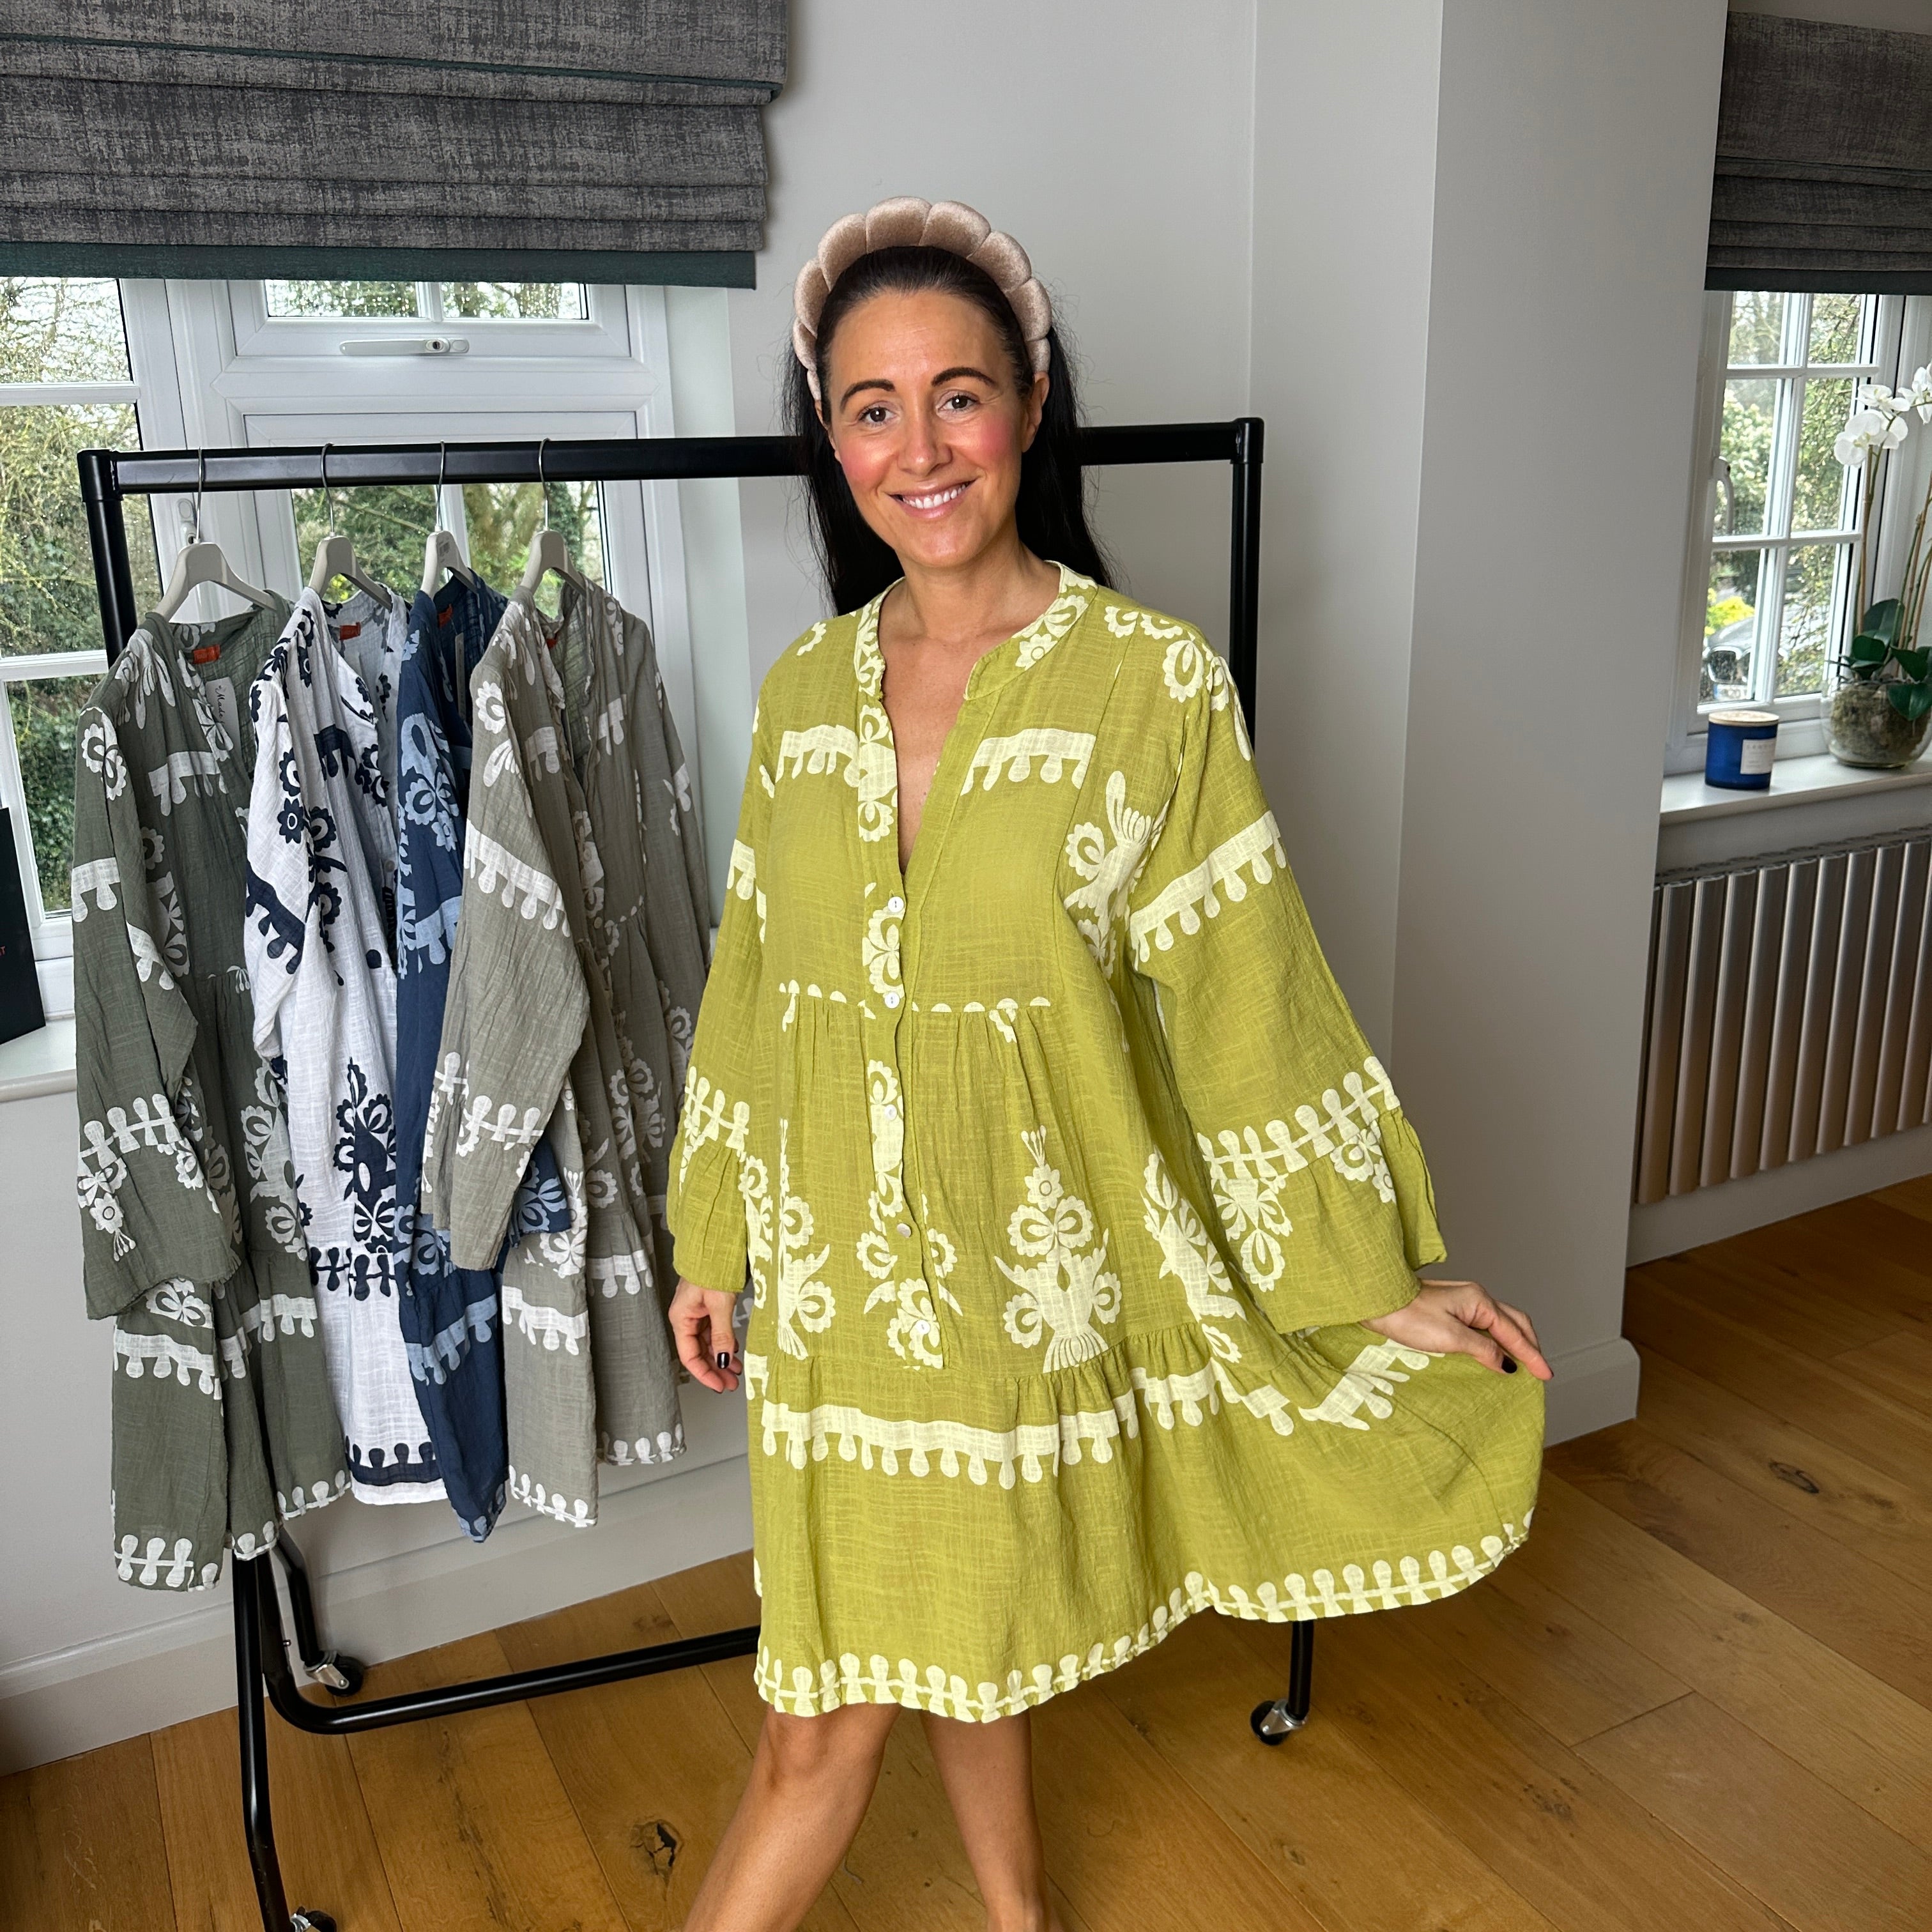 Amelia Cotton Swing Dress - Blush Boutique Essex